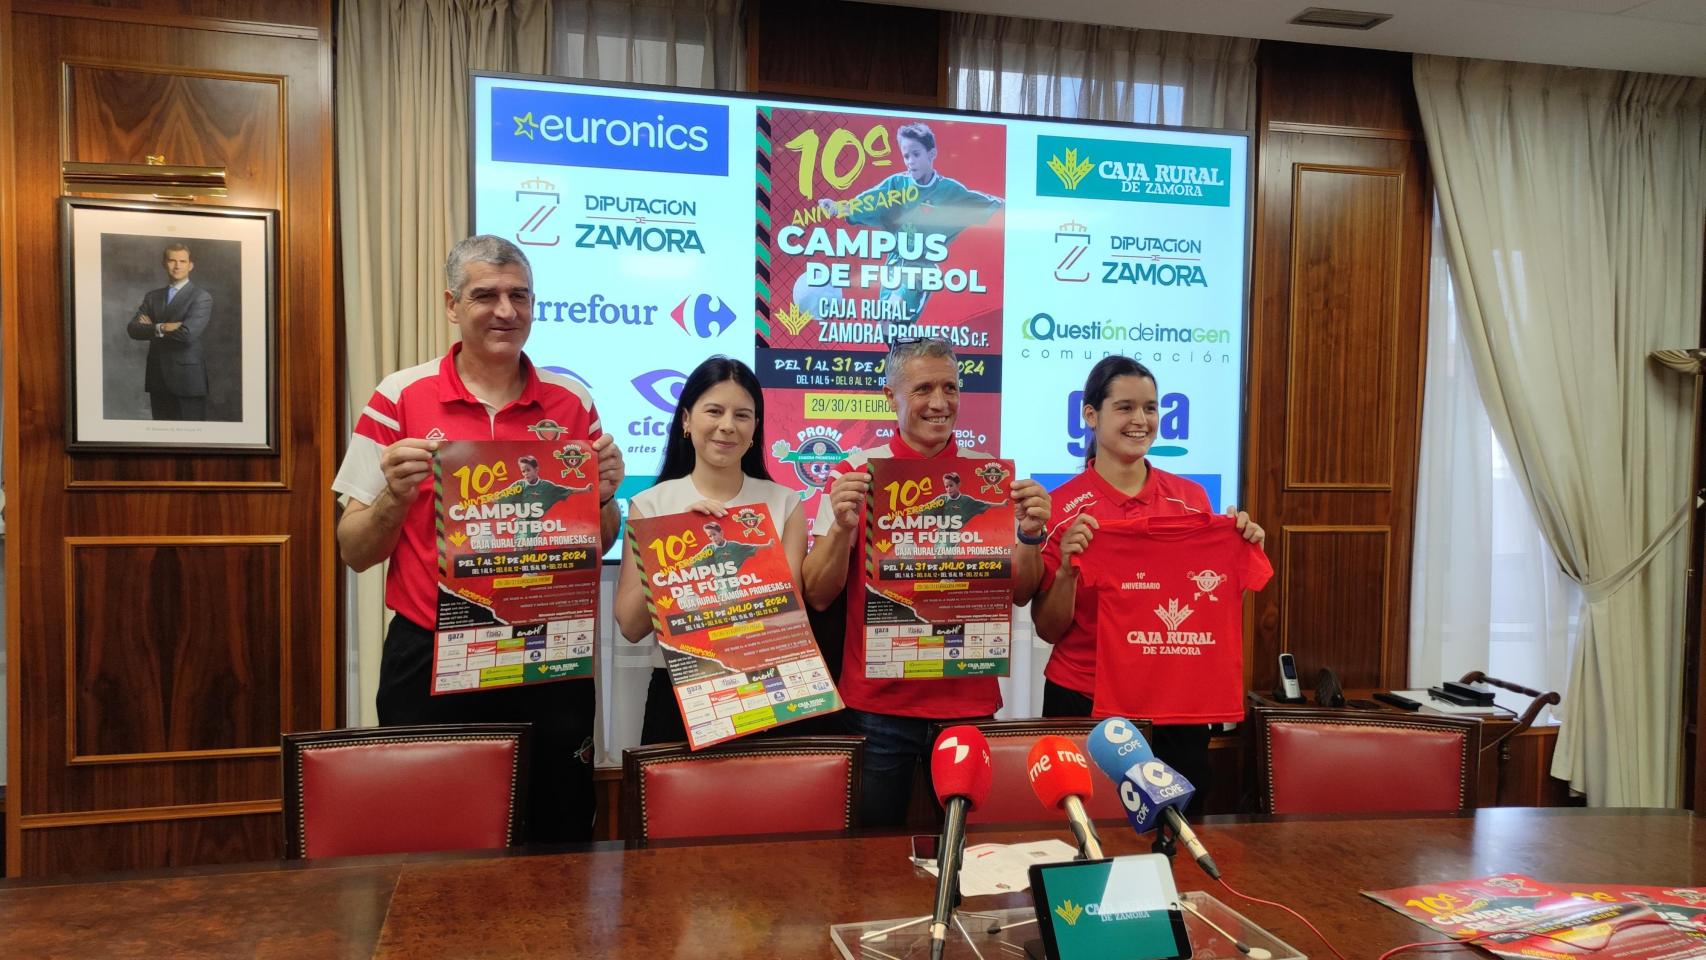 Presentación del campus de fútbol de Caja Rural - Zamora Promesas